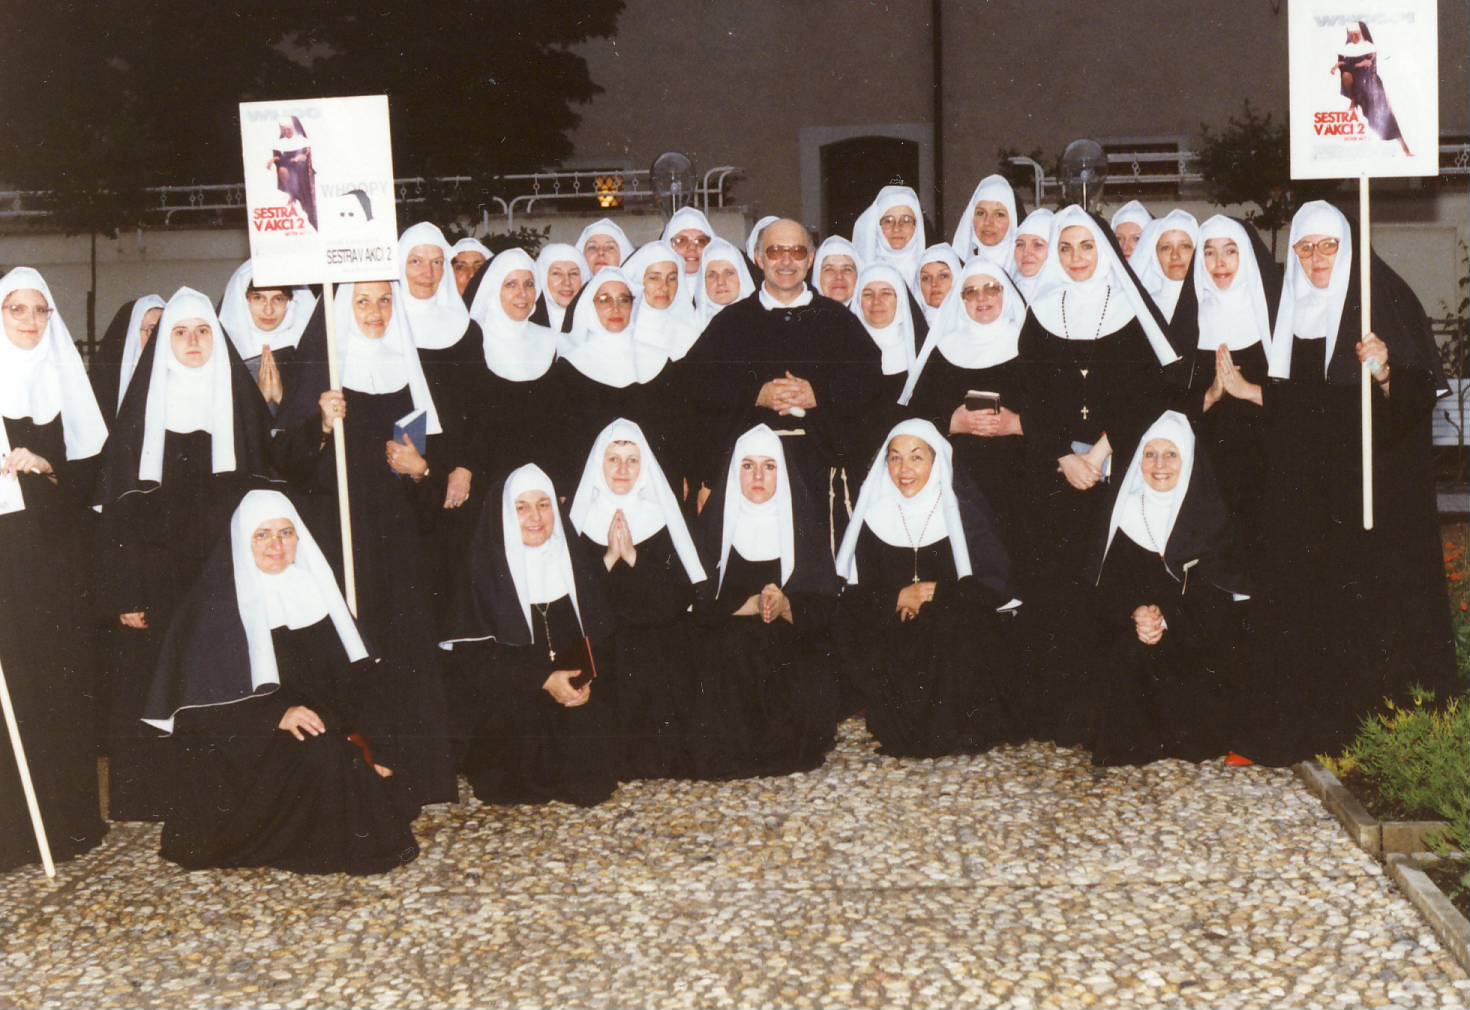 1994-Sestra-v-akci-II